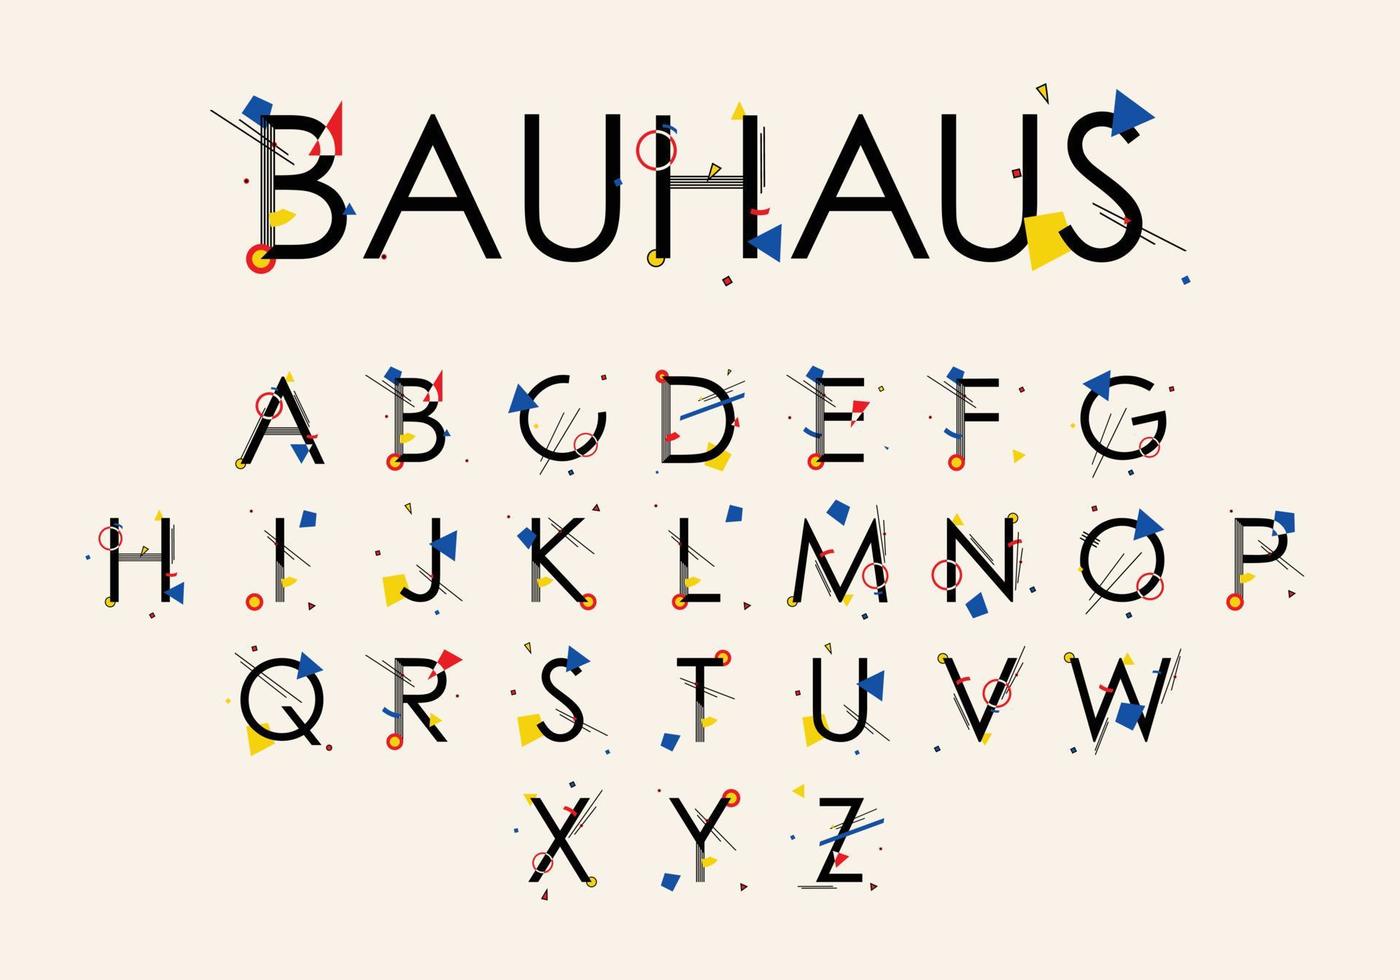 alfabeto bauhaus compuesto por formas geométricas simples, en estilo bauhaus, inspirado en la escuela bauhaus y pinturas de wassily kandinsky vector